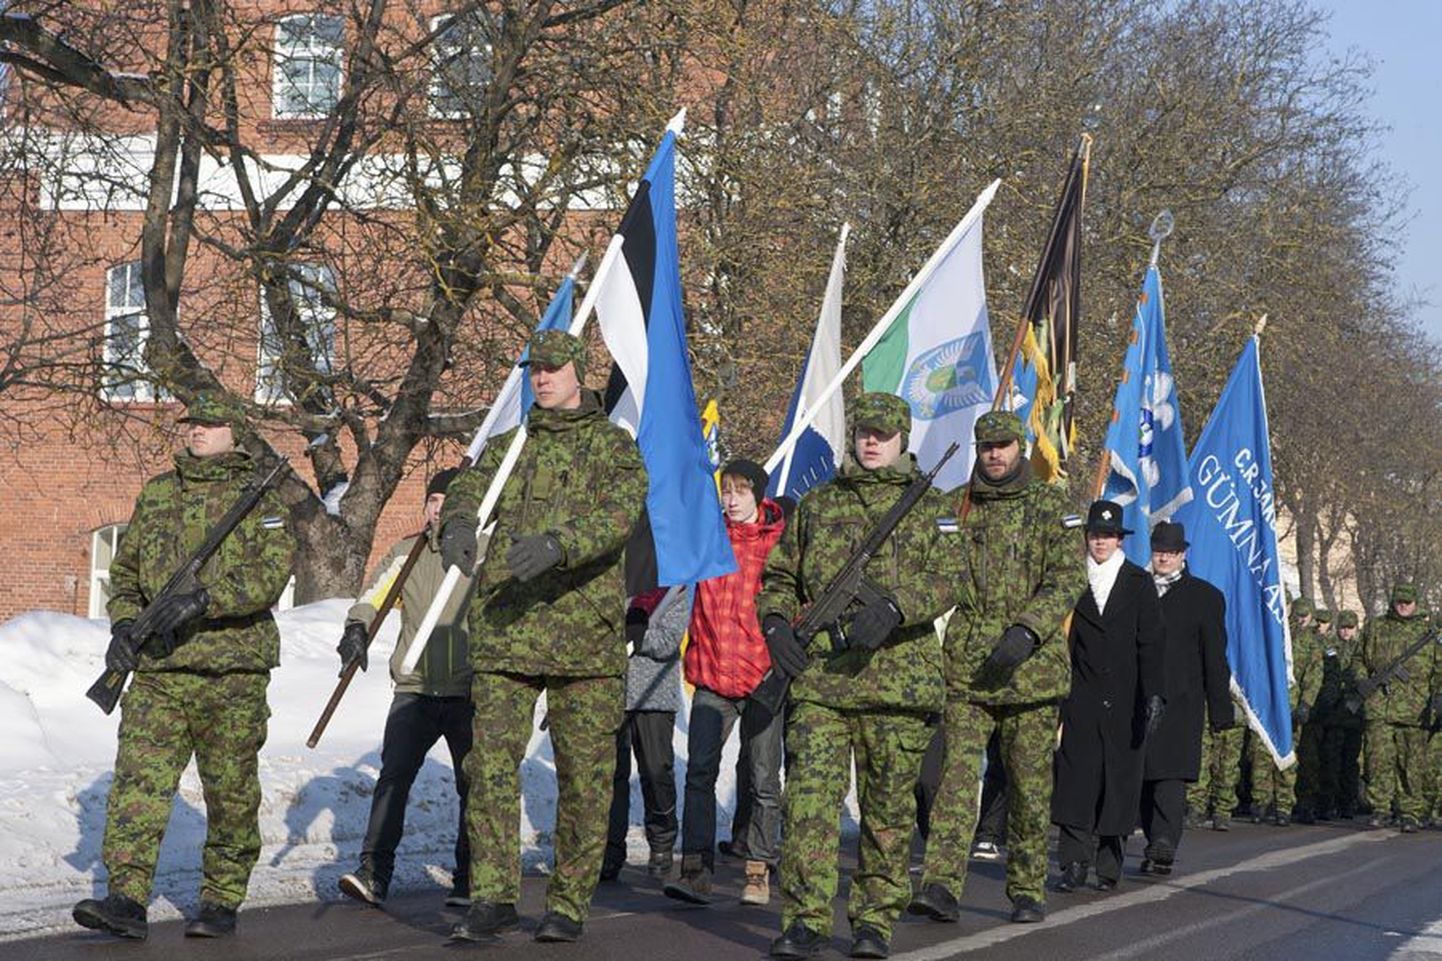 Üks osa Eesti Vabariigi aastapäeva tähistamisest on olnud rongkäik läbi linna. Pilt pärineb 2011. aastast.